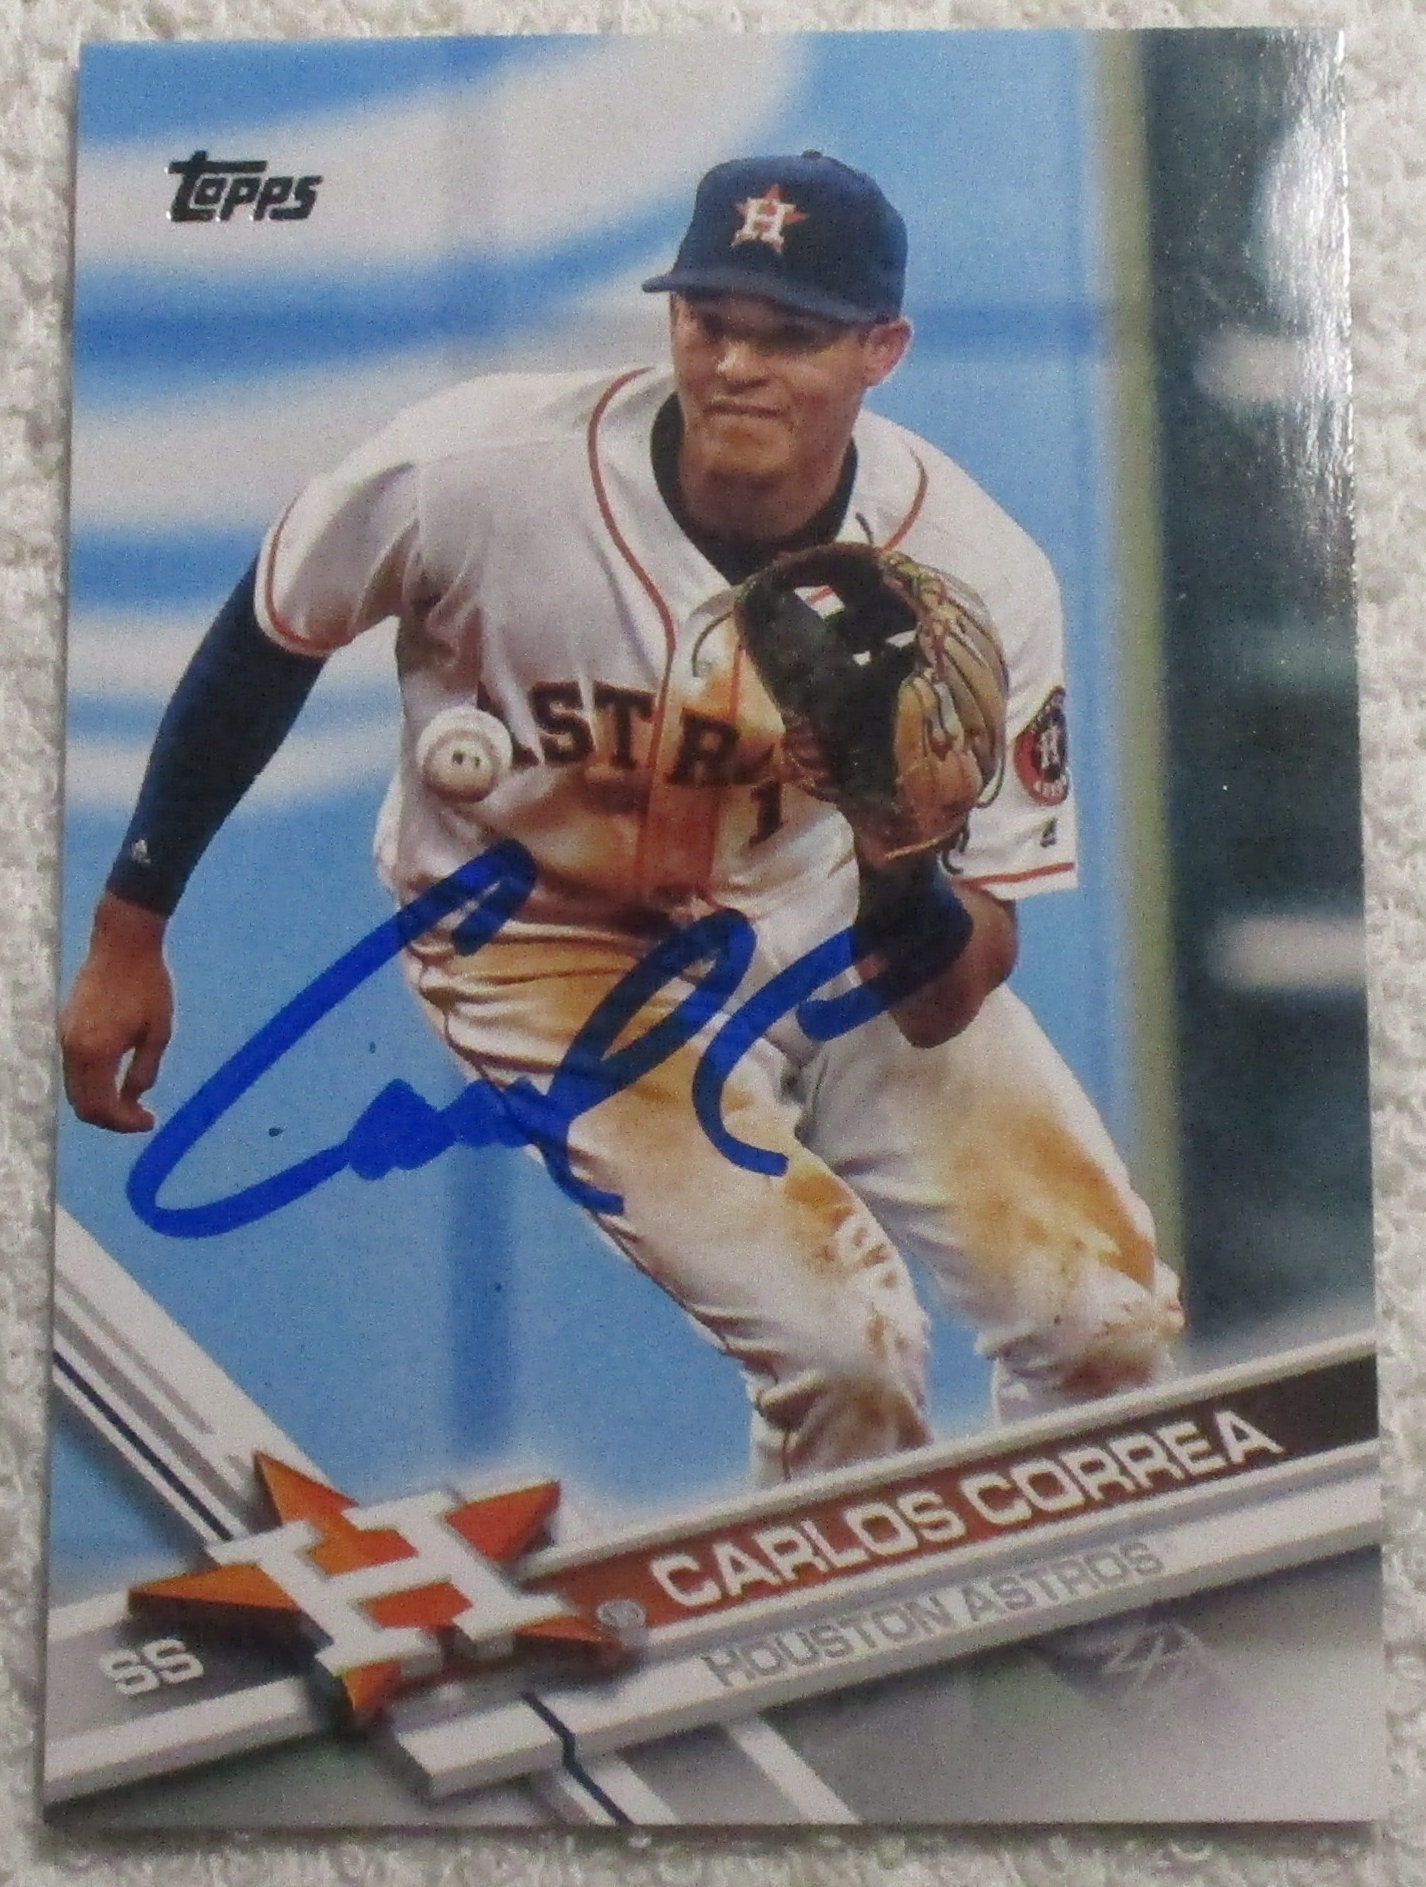 Carlos Correa Autographed Card Astros No COA 